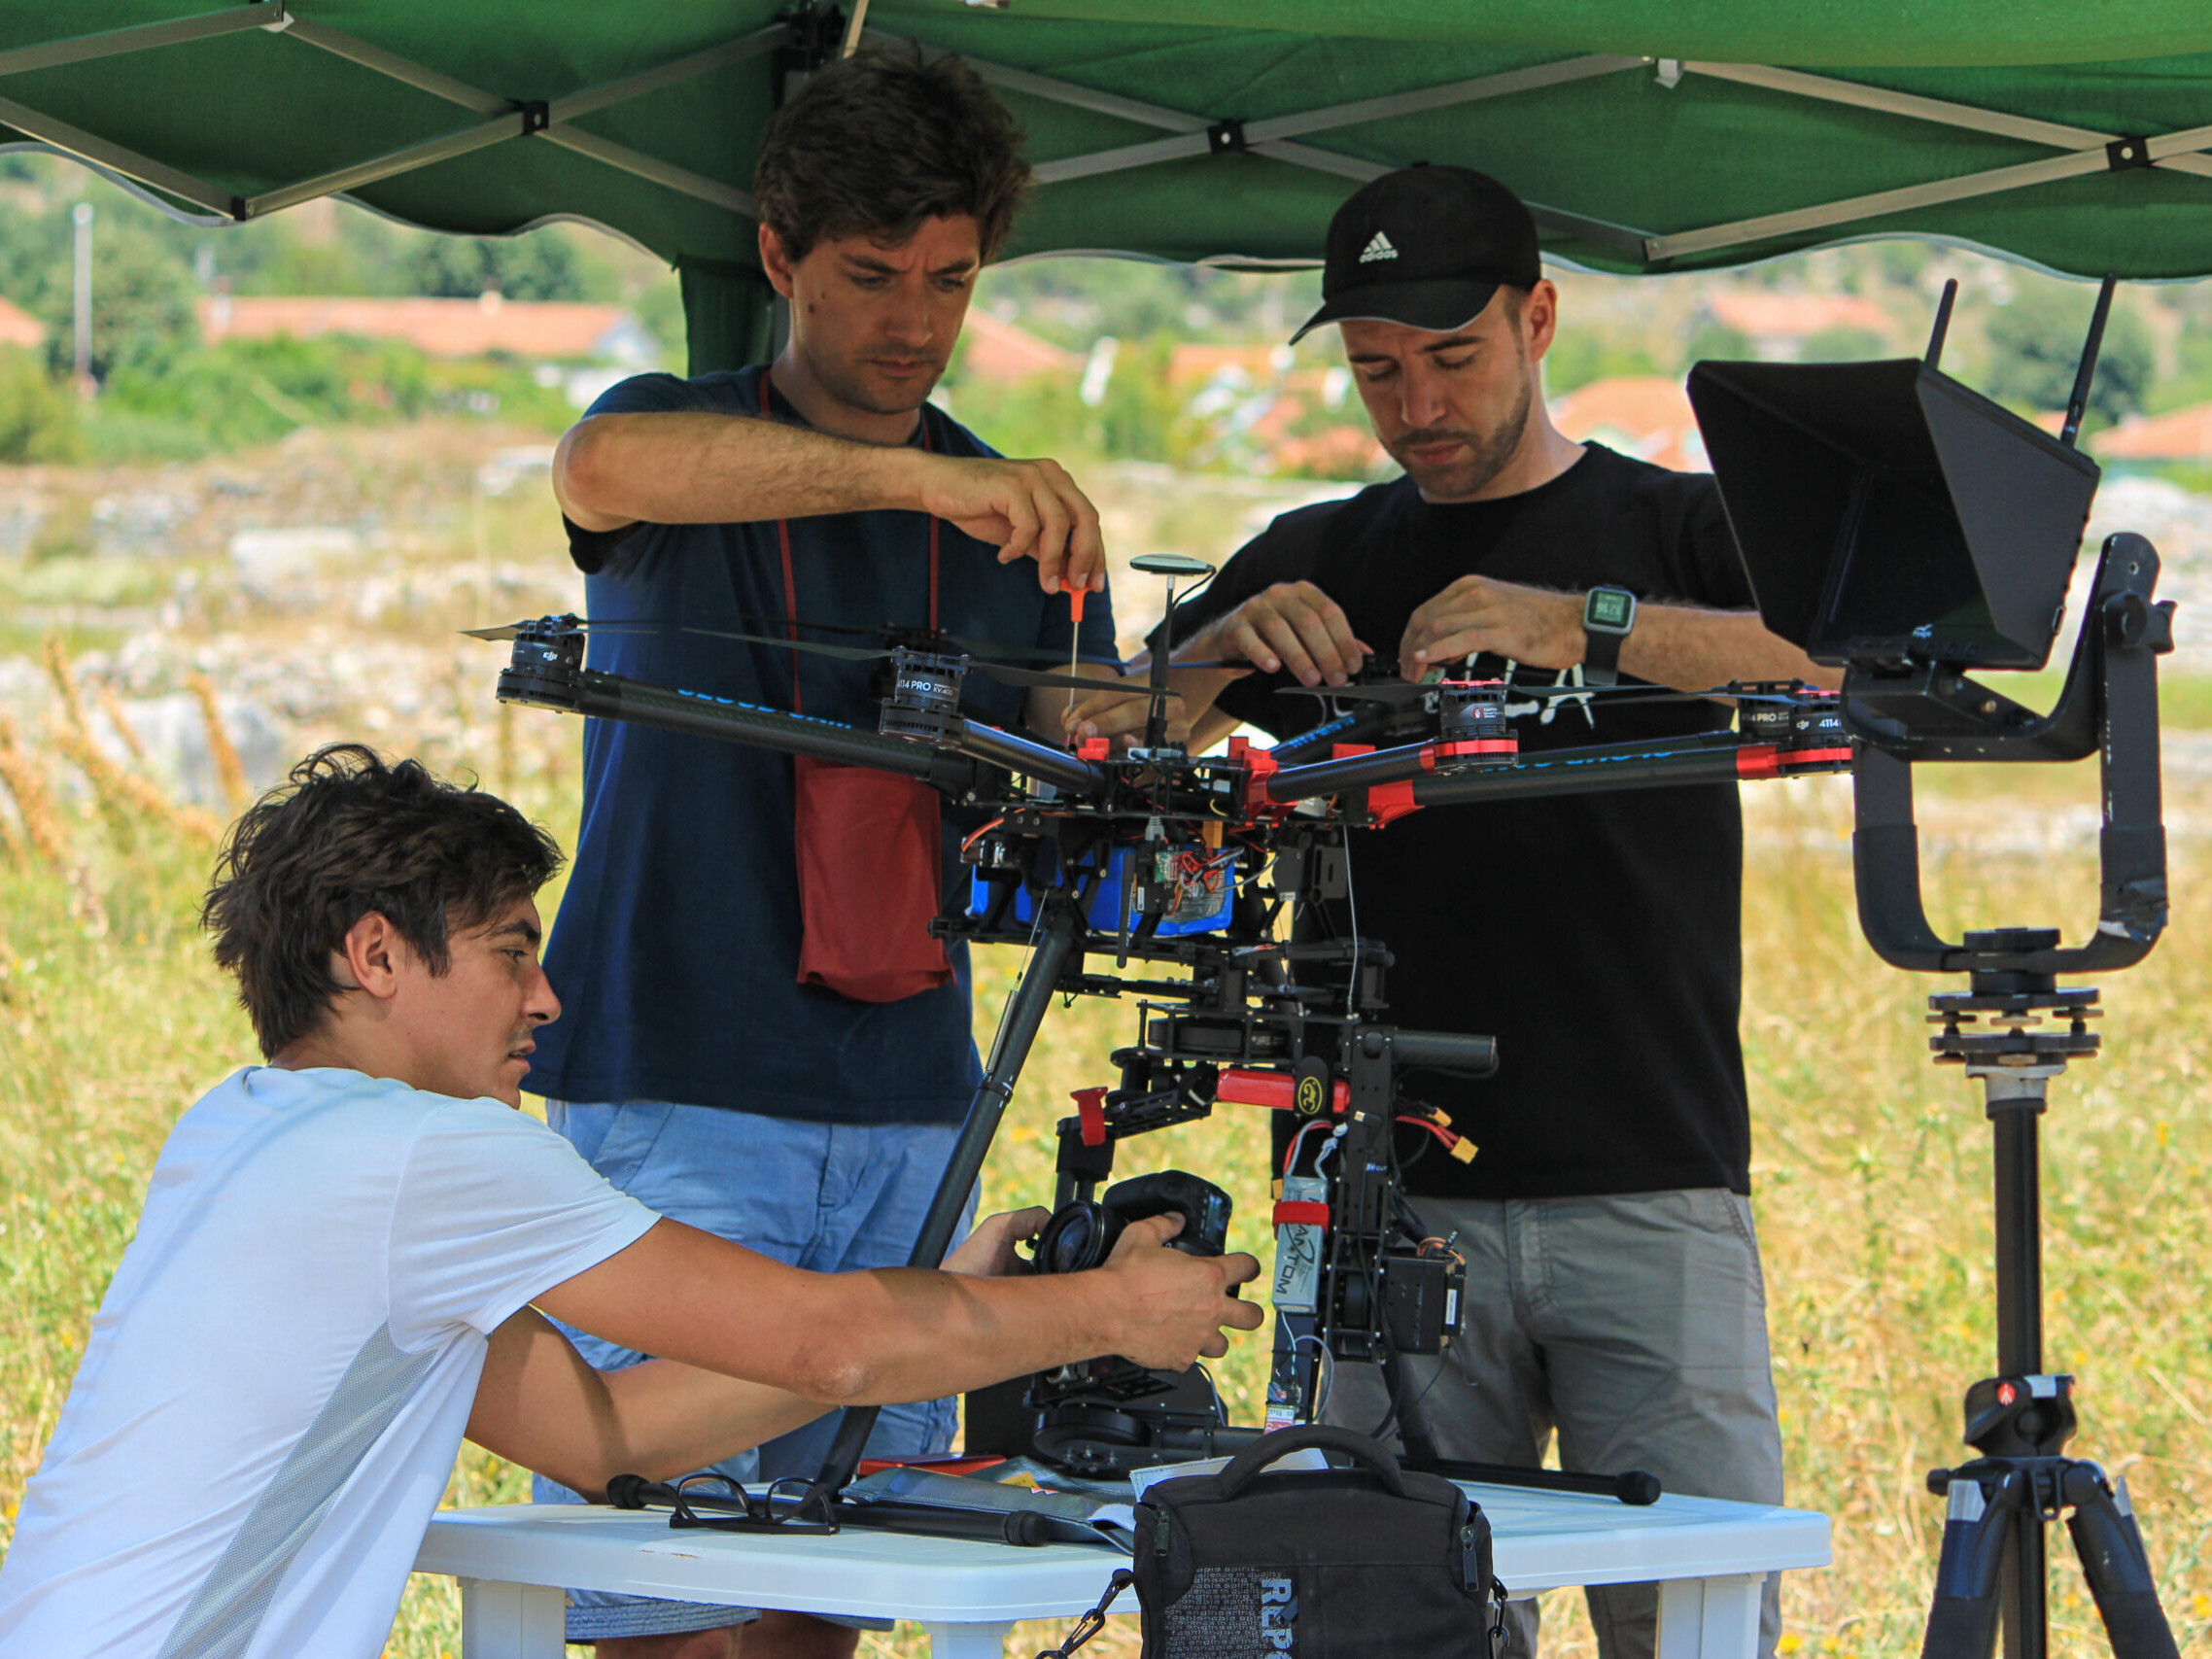 Team di ricerca in preparazione del drone per le attività di rilevamento fotogrammetrico aereo. Montenegro, 2016